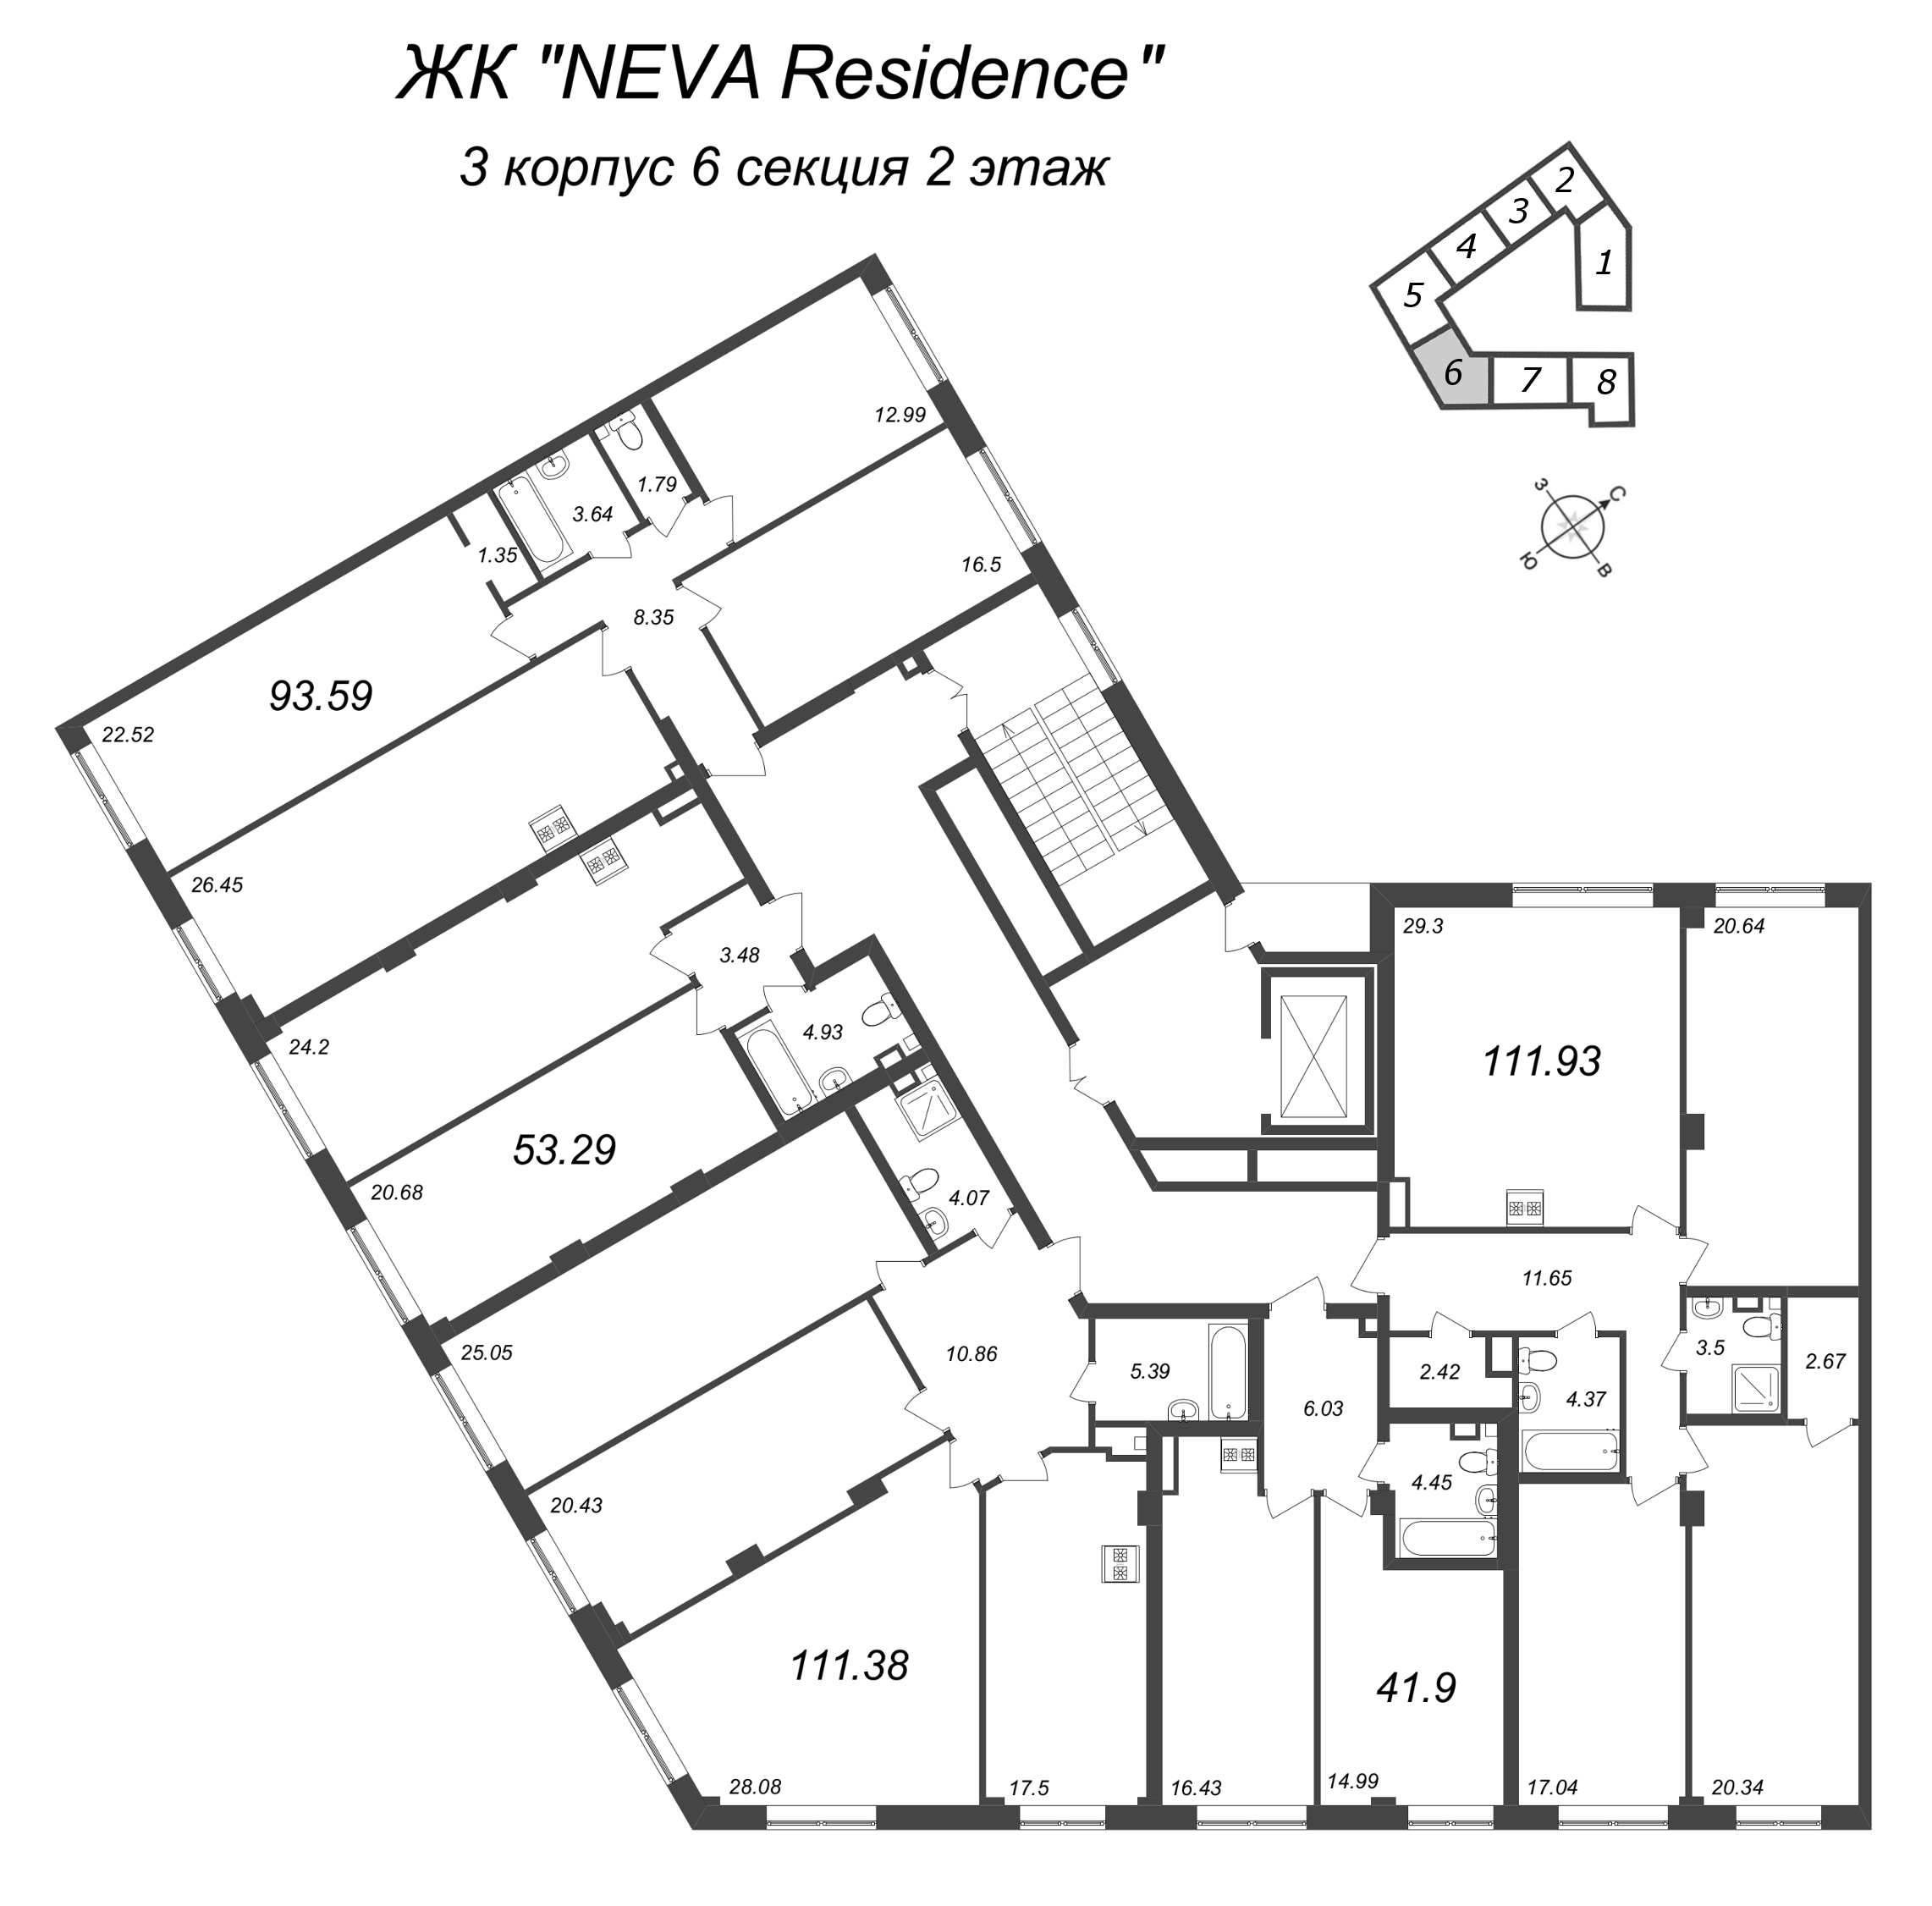 4-комнатная (Евро) квартира, 93.59 м² в ЖК "Neva Residence" - планировка этажа